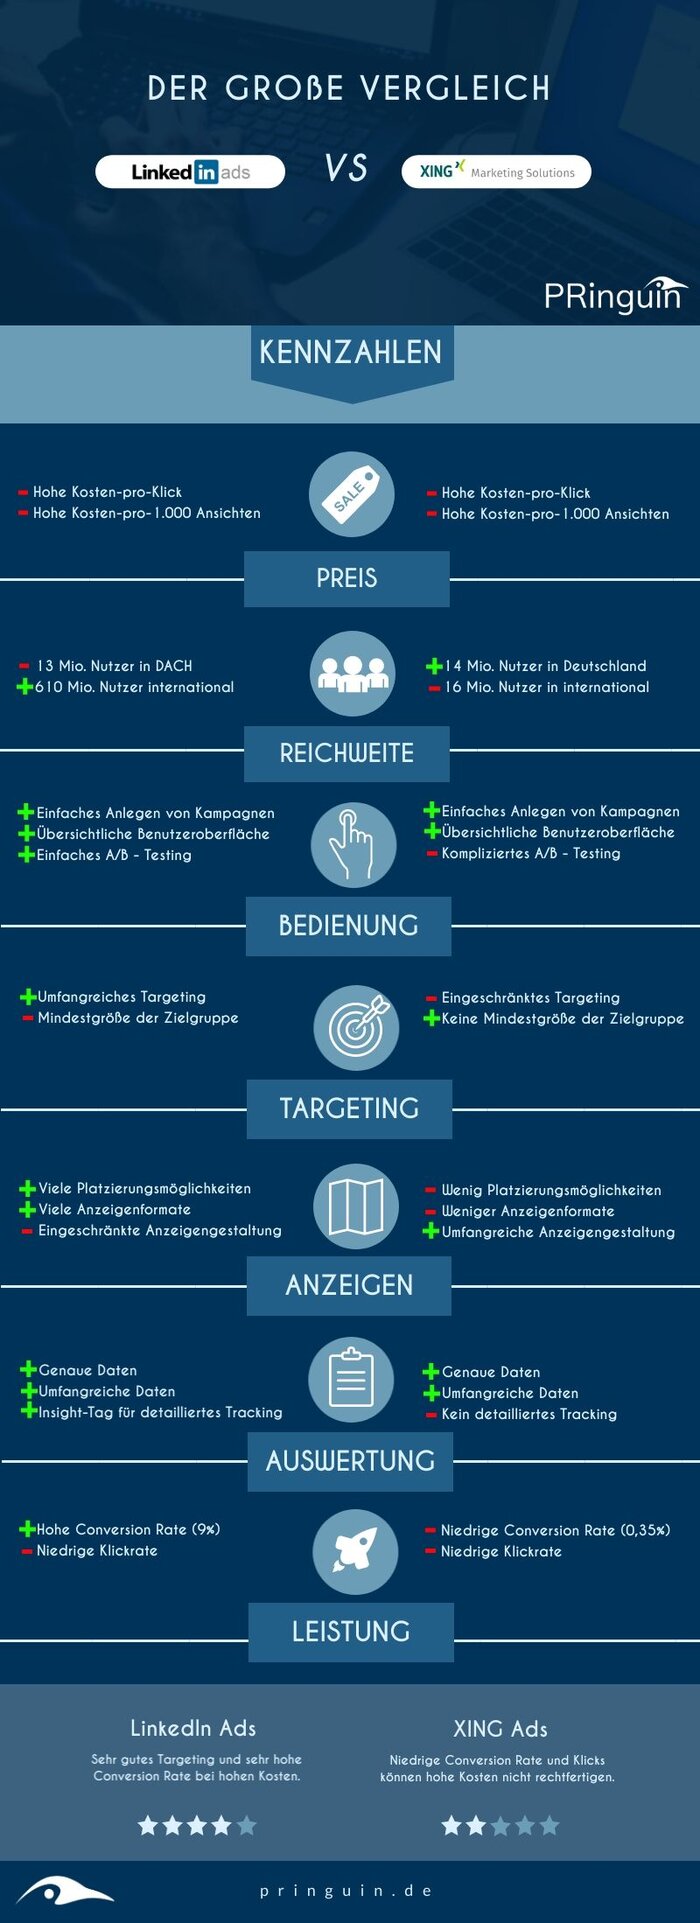 Tipps für LinkedIn Ads und XING Ads von der PRinguin Digitalagentur aus Bamberg